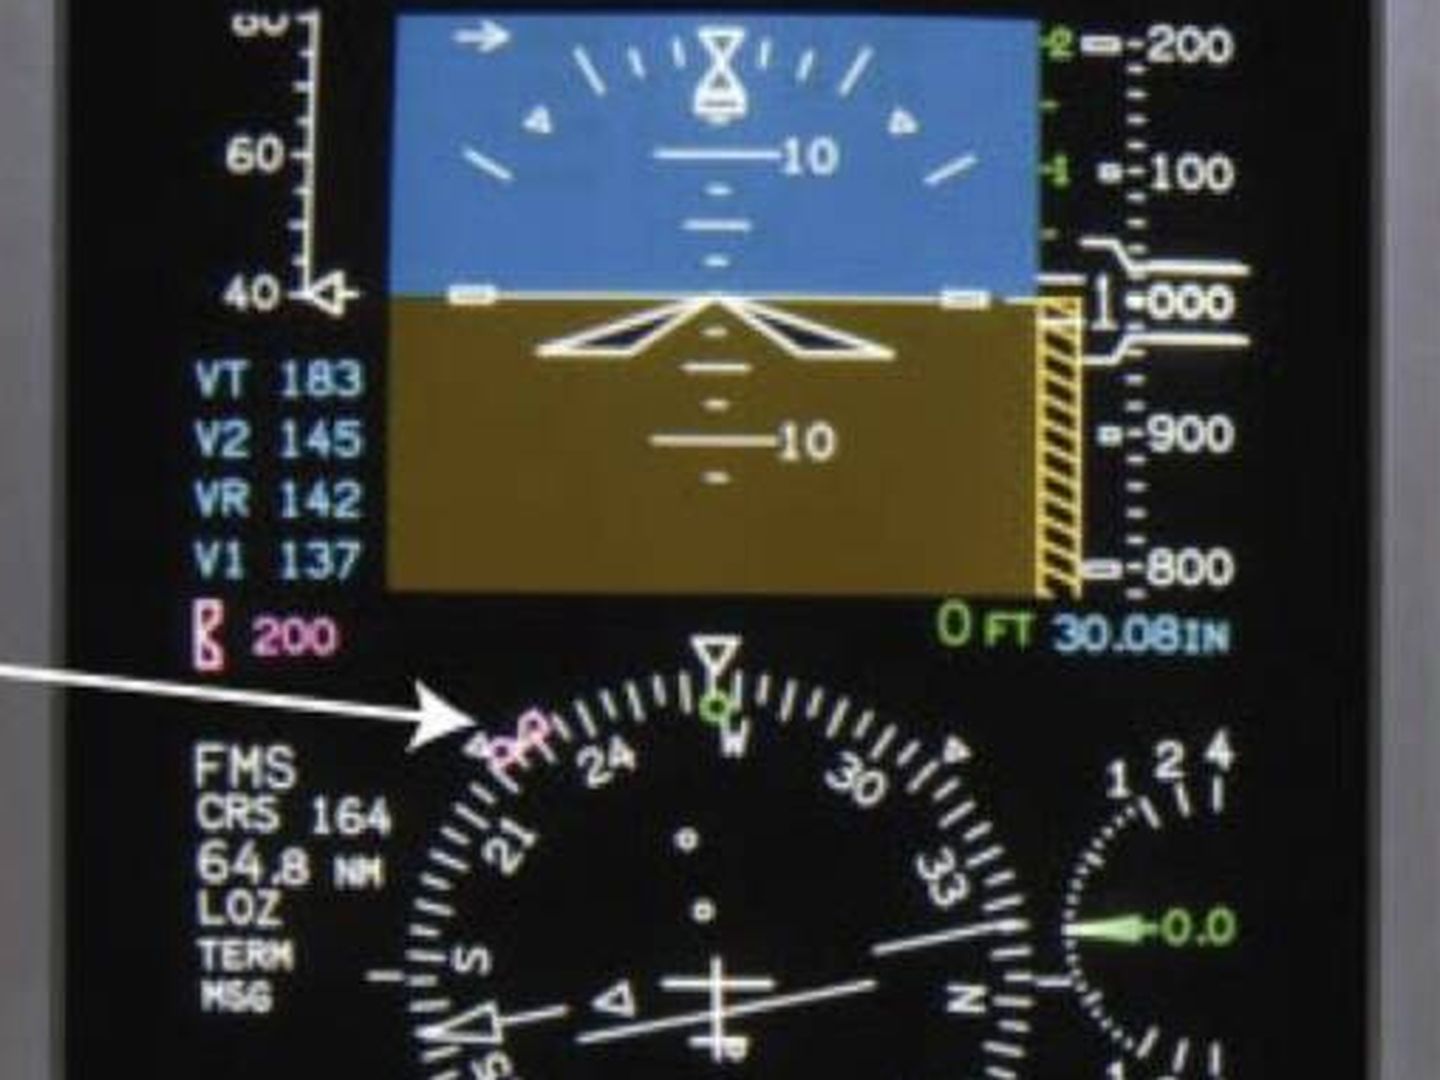 PFD del avión en el que se indica cómo y dónde se muestra el rumbo magnético.